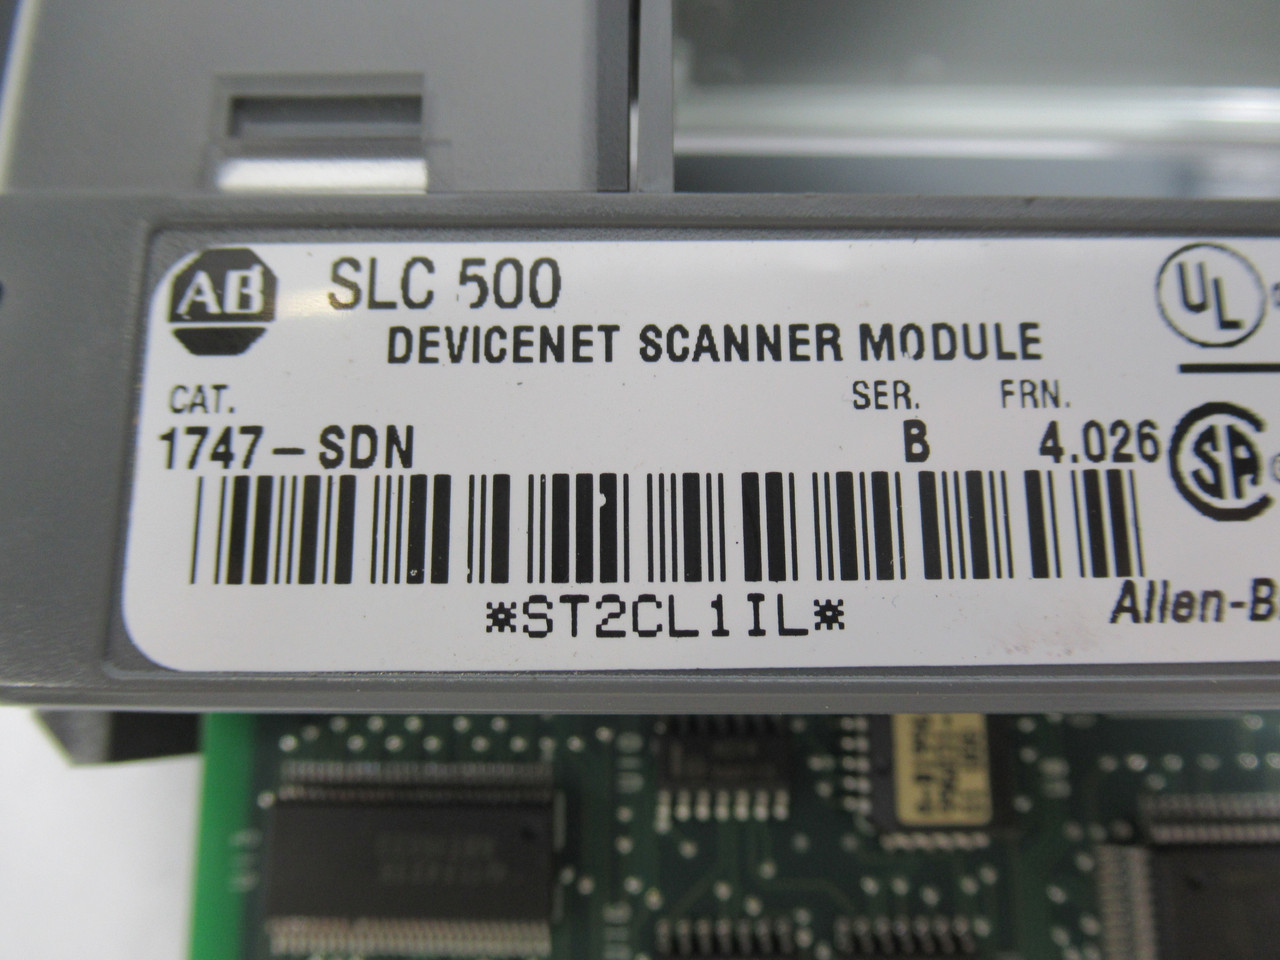 Allen-Bradley 1747-SDN Ser. B. FRN 4.026 DeviceNet Scanner Module 962422 USED